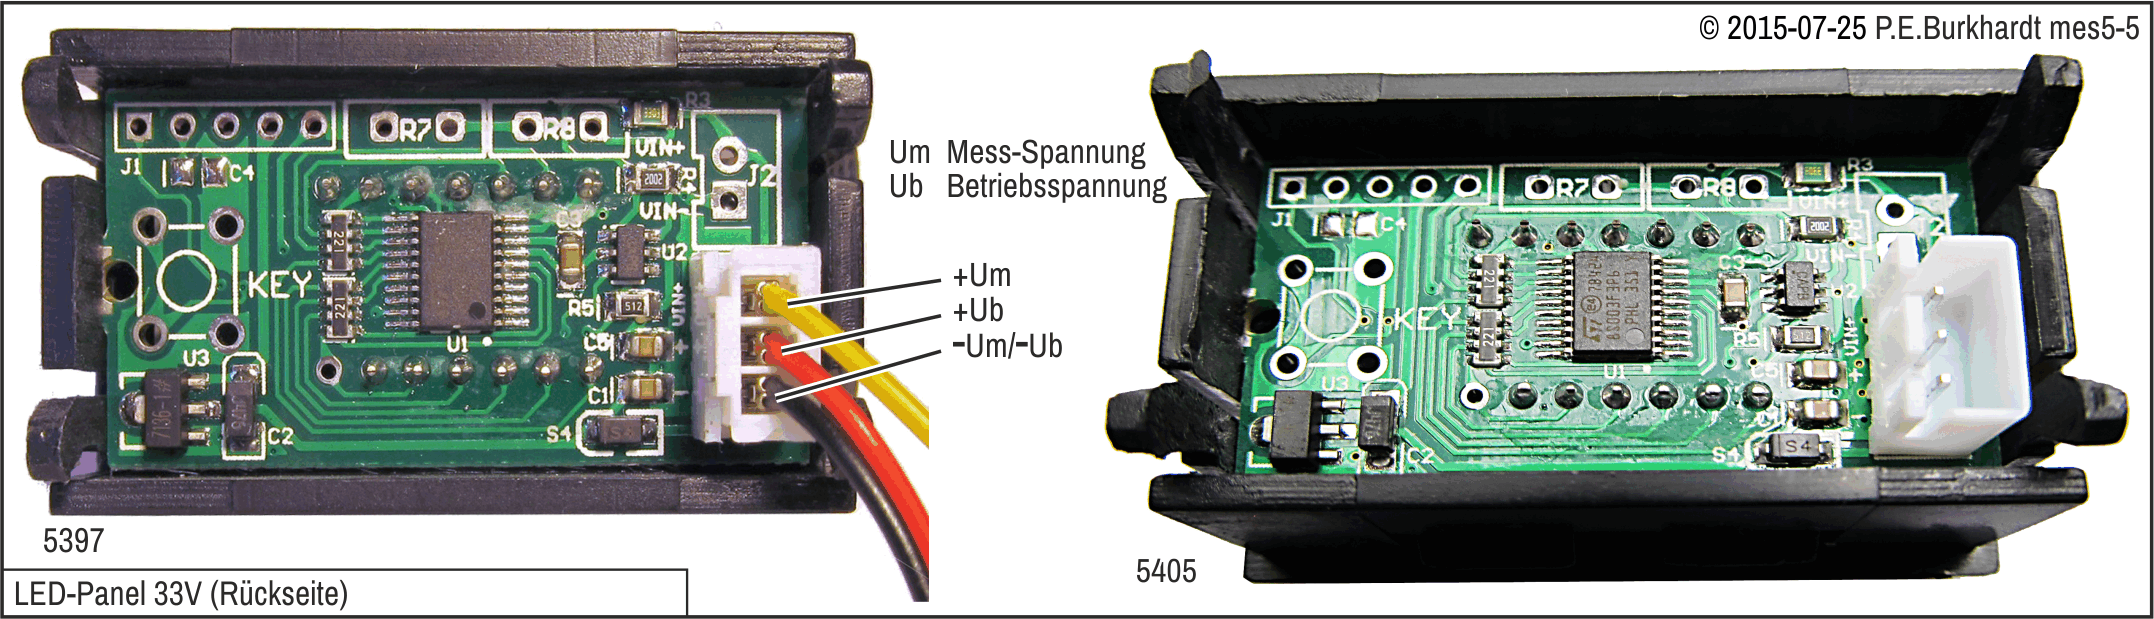 LED-Panel VM533 (33 V)